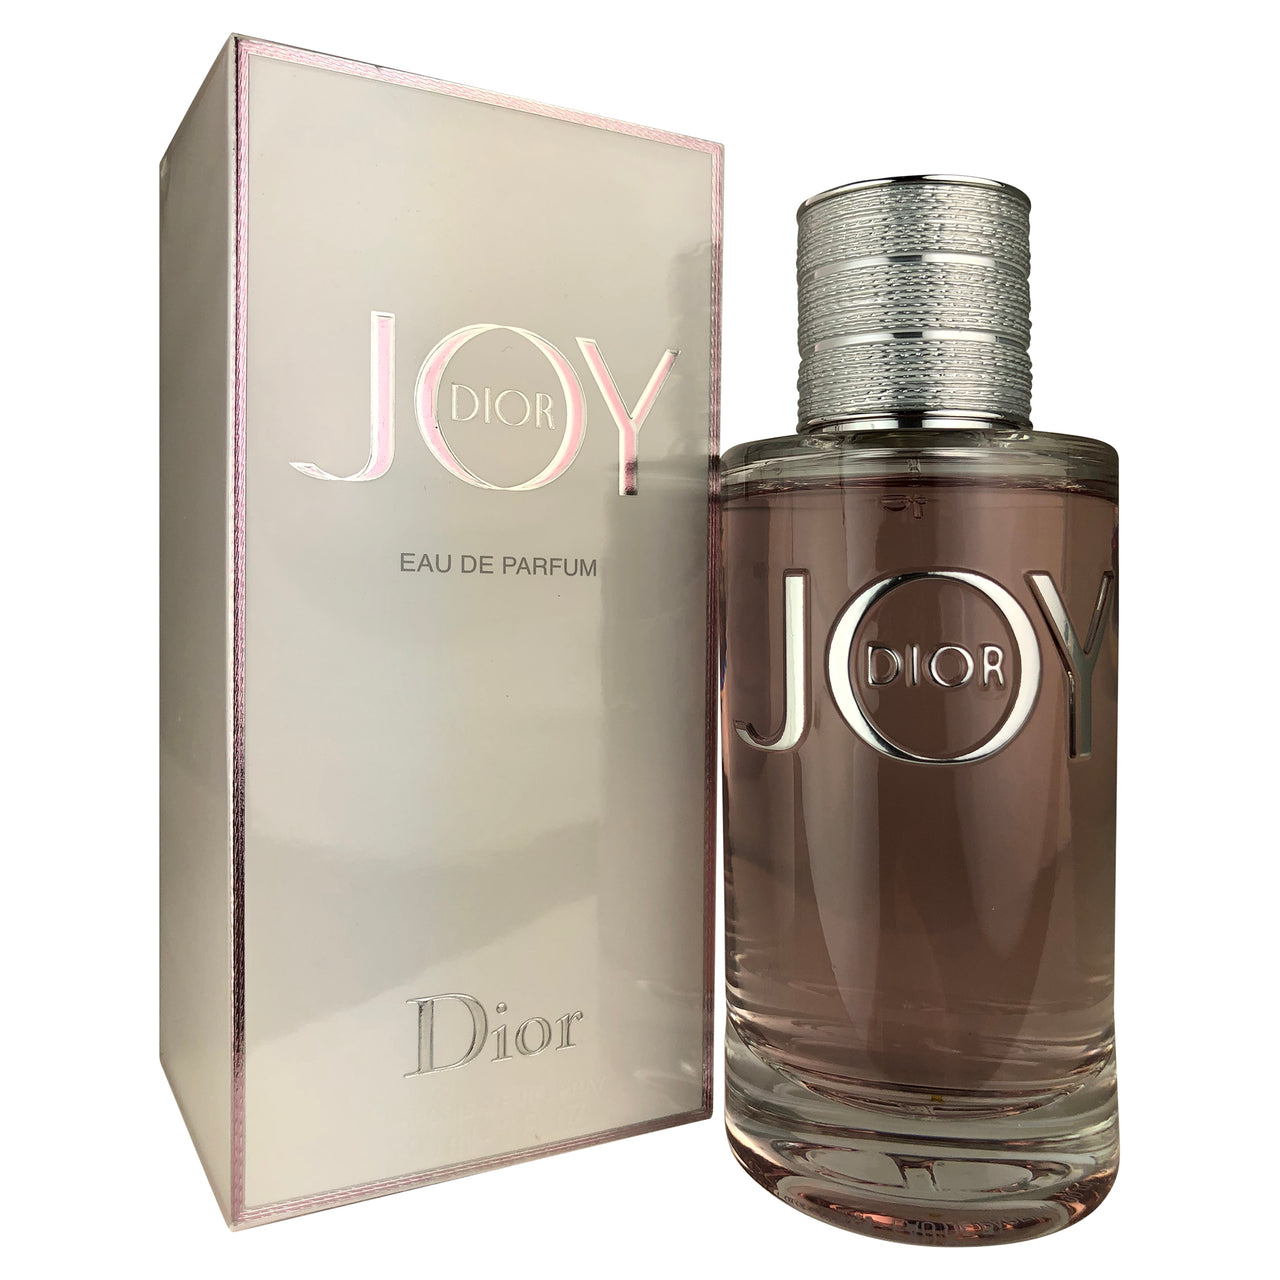 Dior Joy For Women By Christian Dior 3.0 oz Eau de Parfum Spray